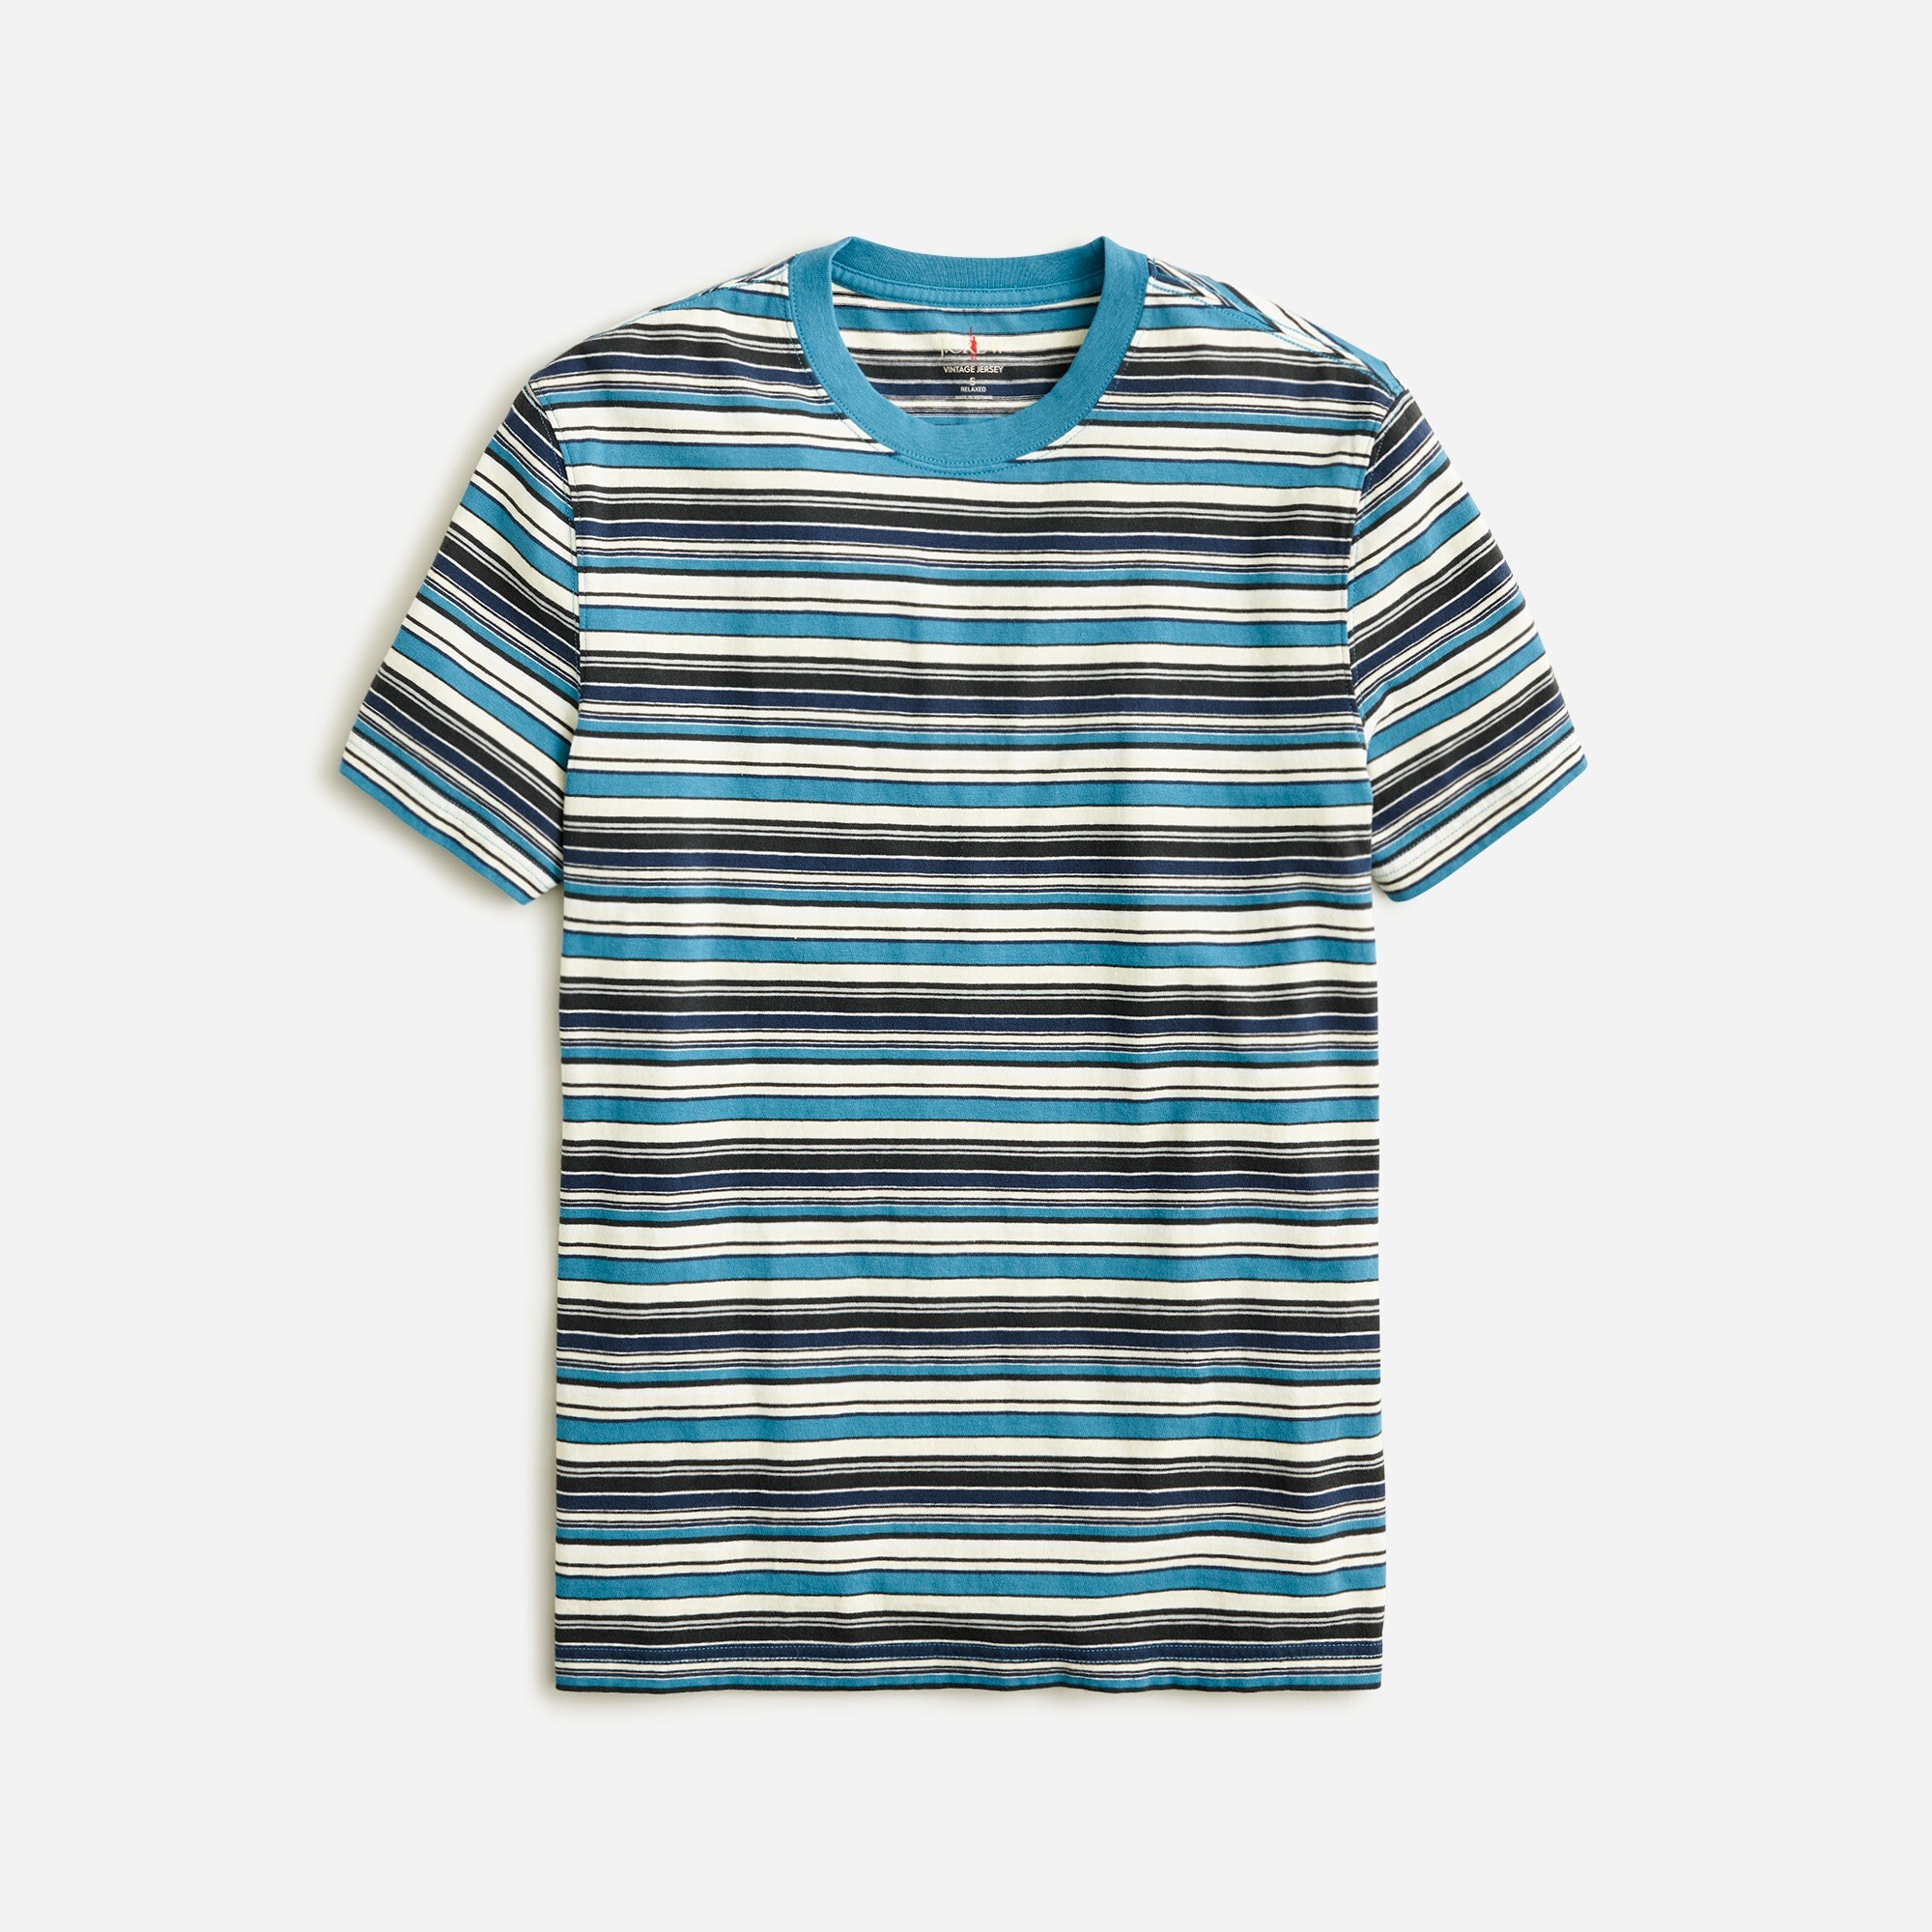  Vintage-wash cotton T-shirt in stripe